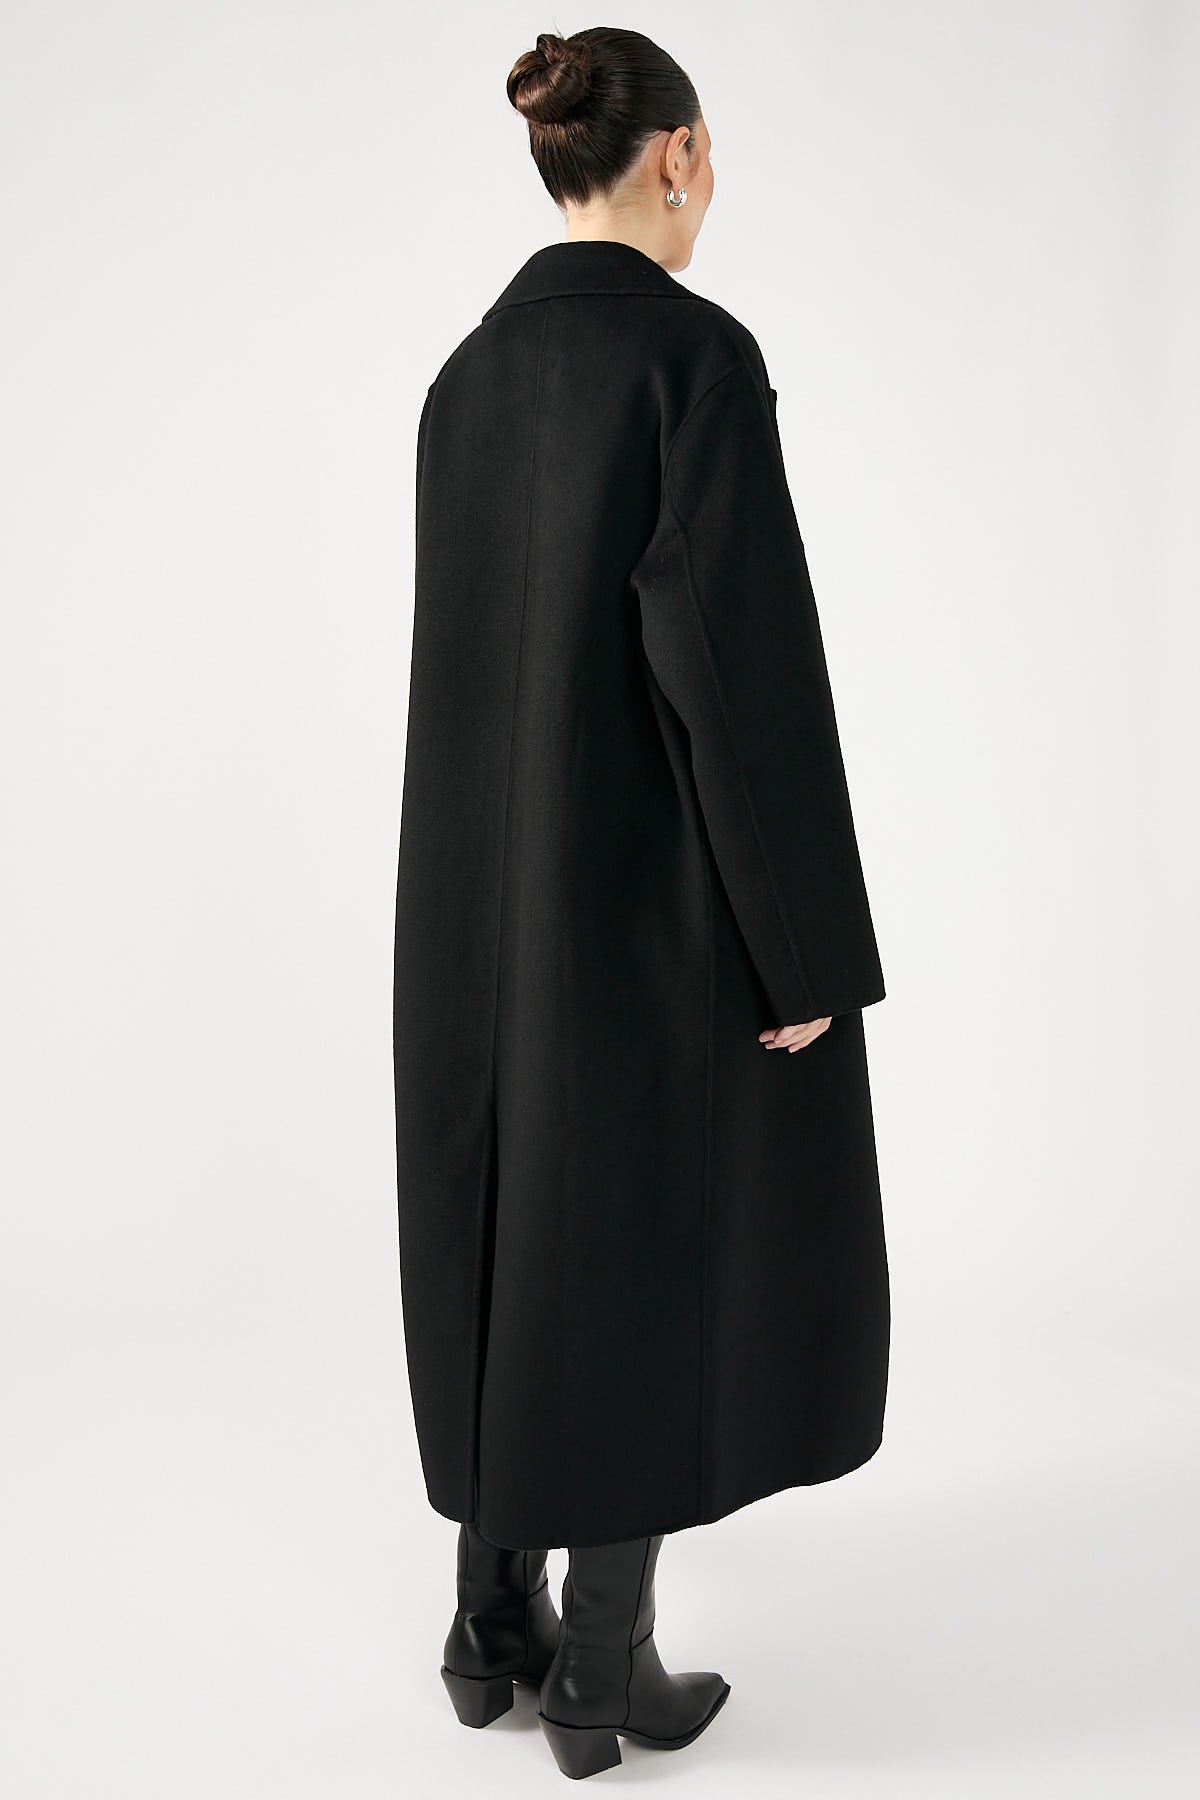 Perfect Stranger Asher Long Line Coat Black